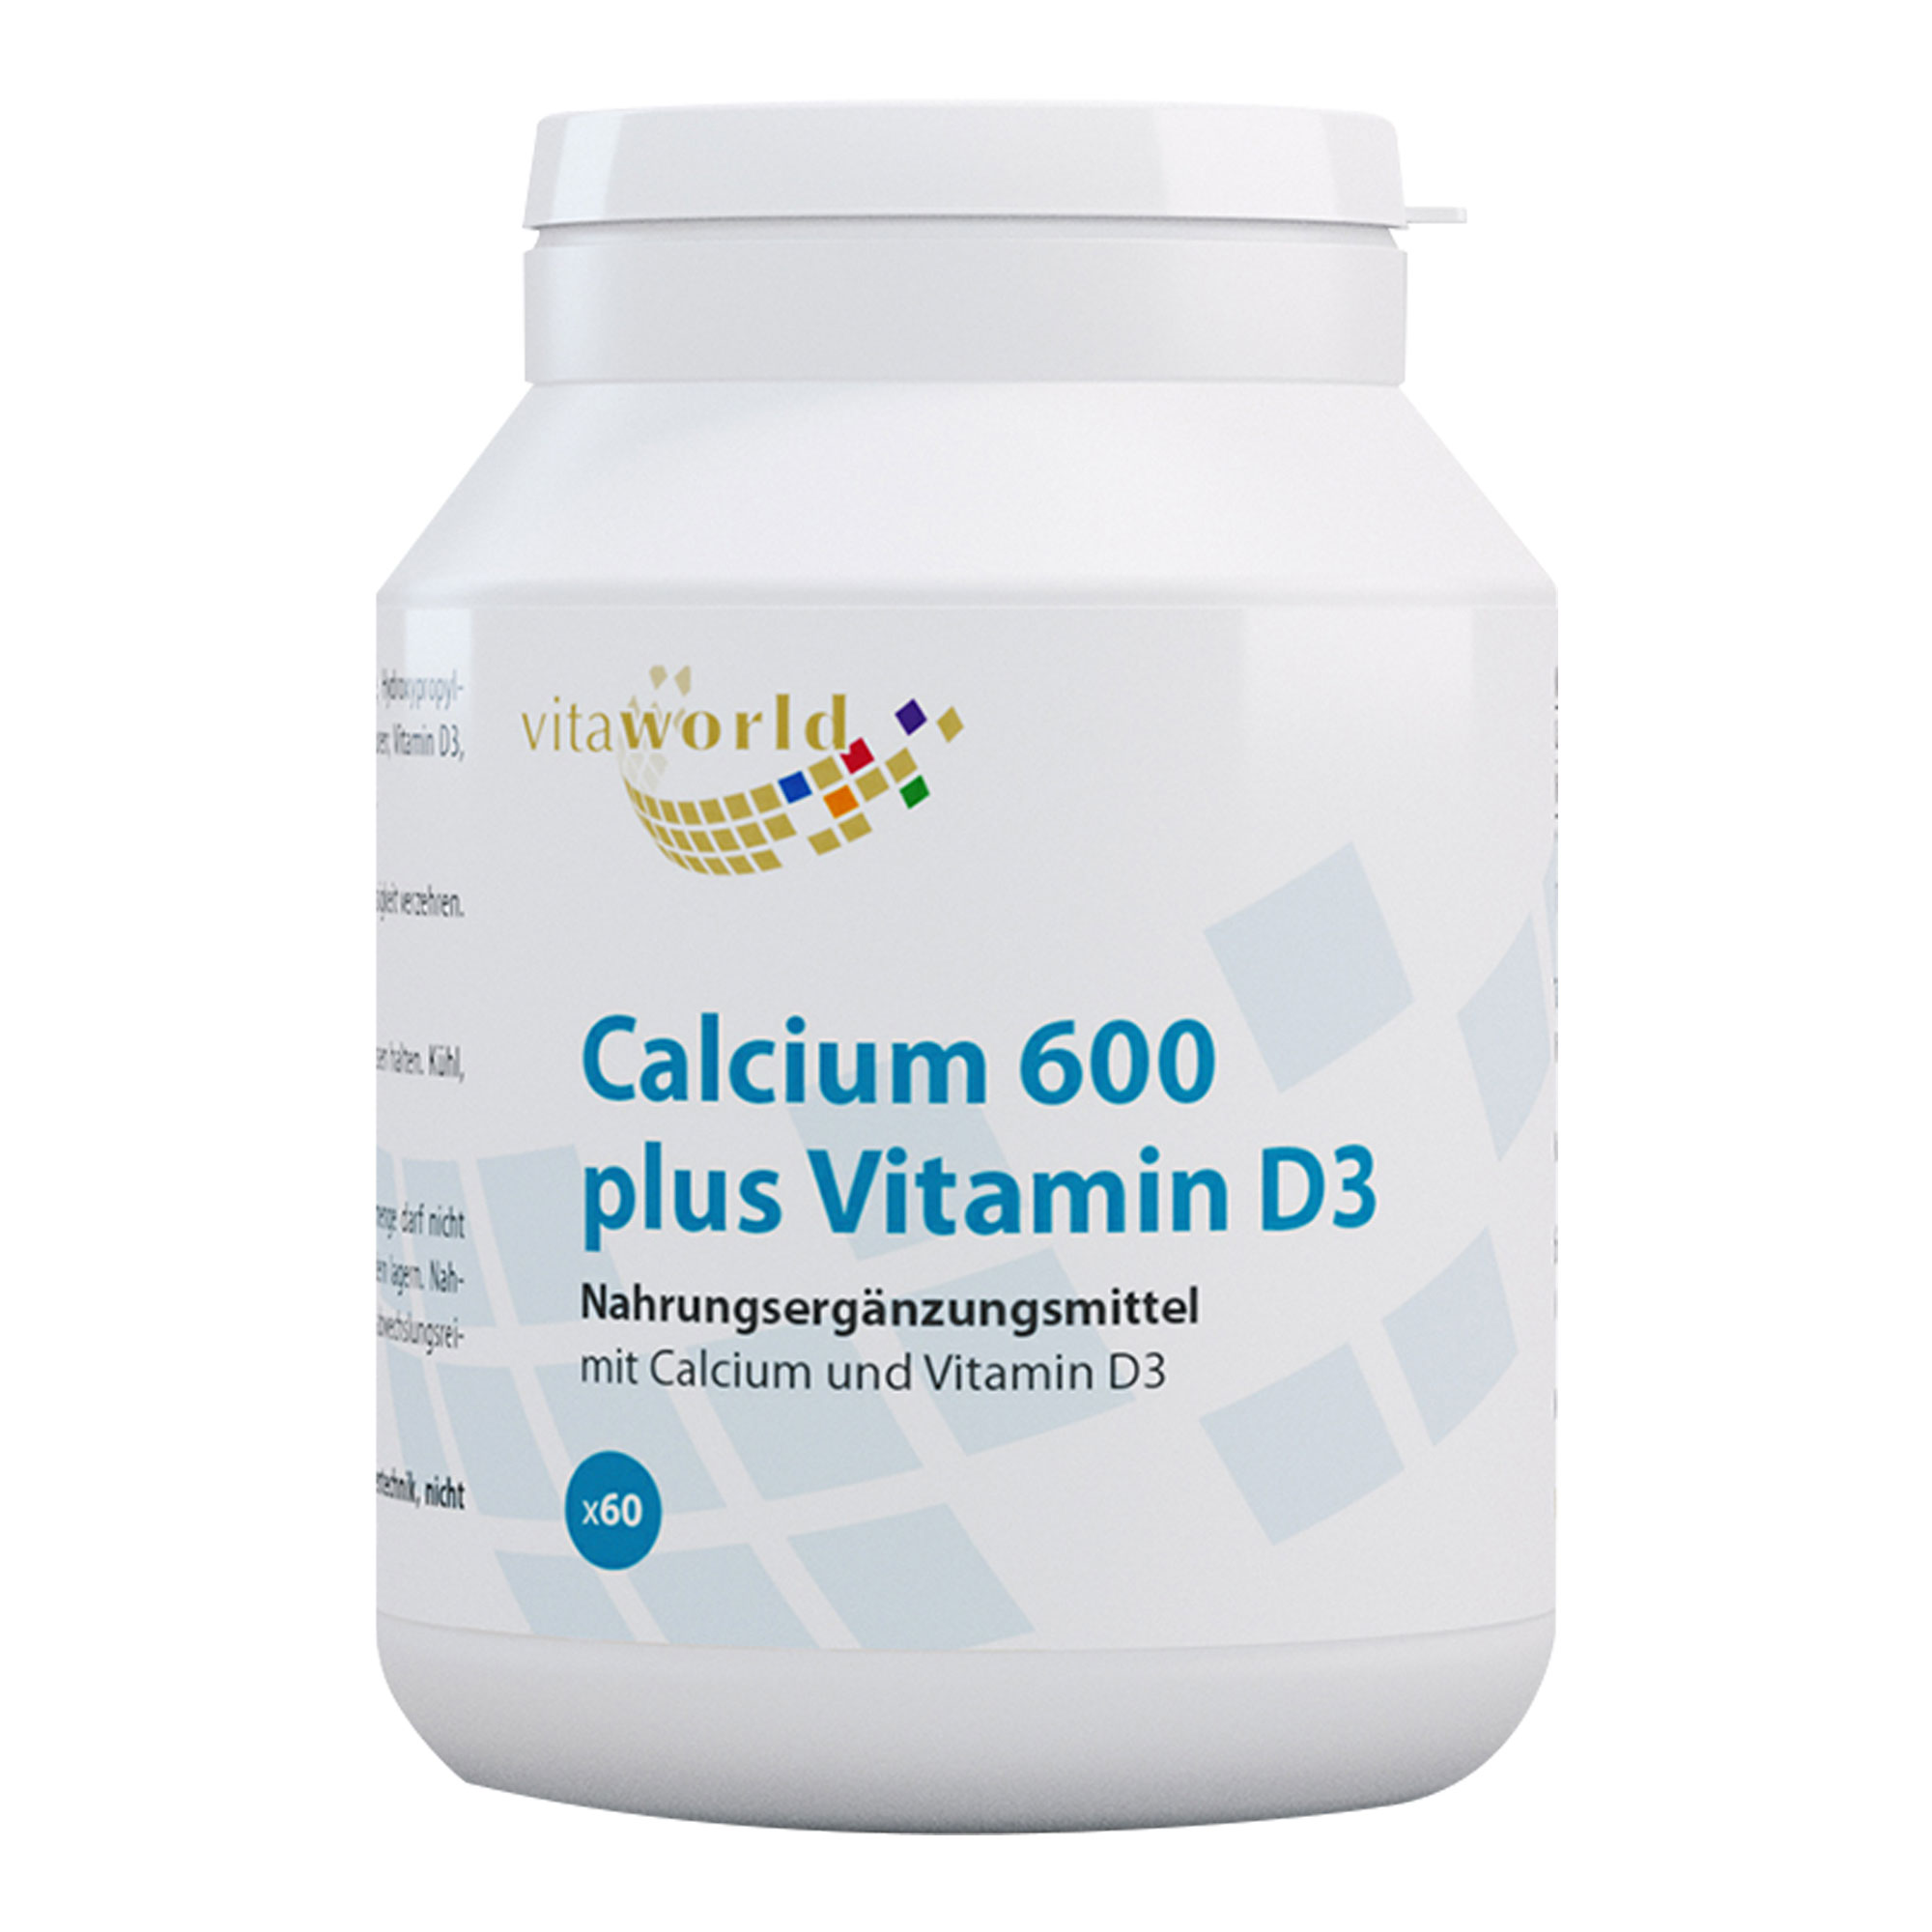 Für Knochen und Zähne – Calcium + Vitamin D3.